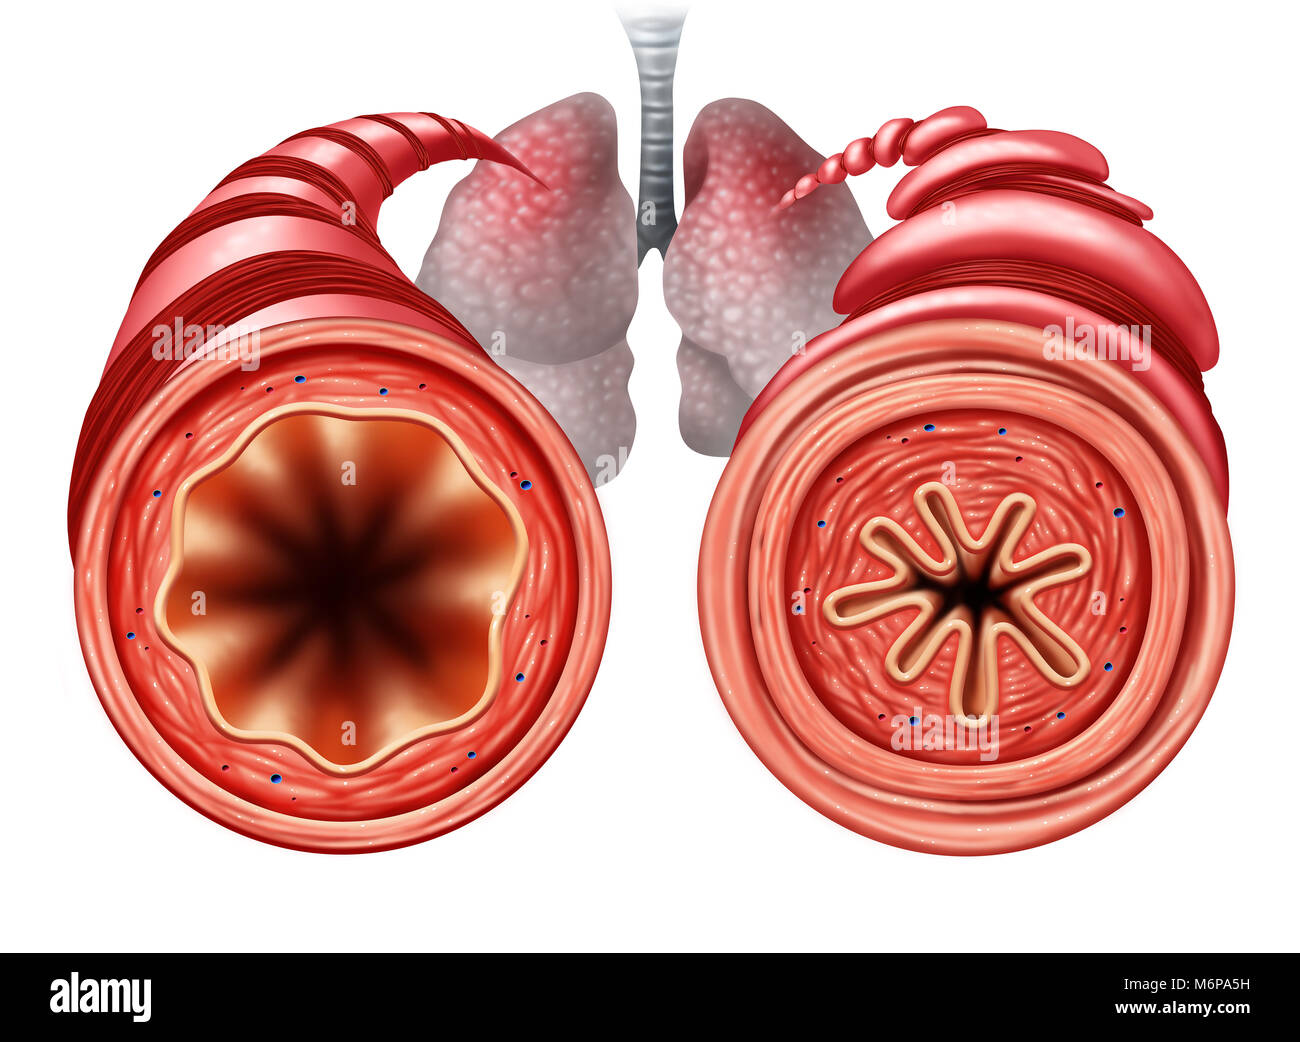 Diagrama de asma como saludables y no saludables de tubo bronquial con un problema respiratorio causado por la constricción de los músculos respiratorios. Foto de stock